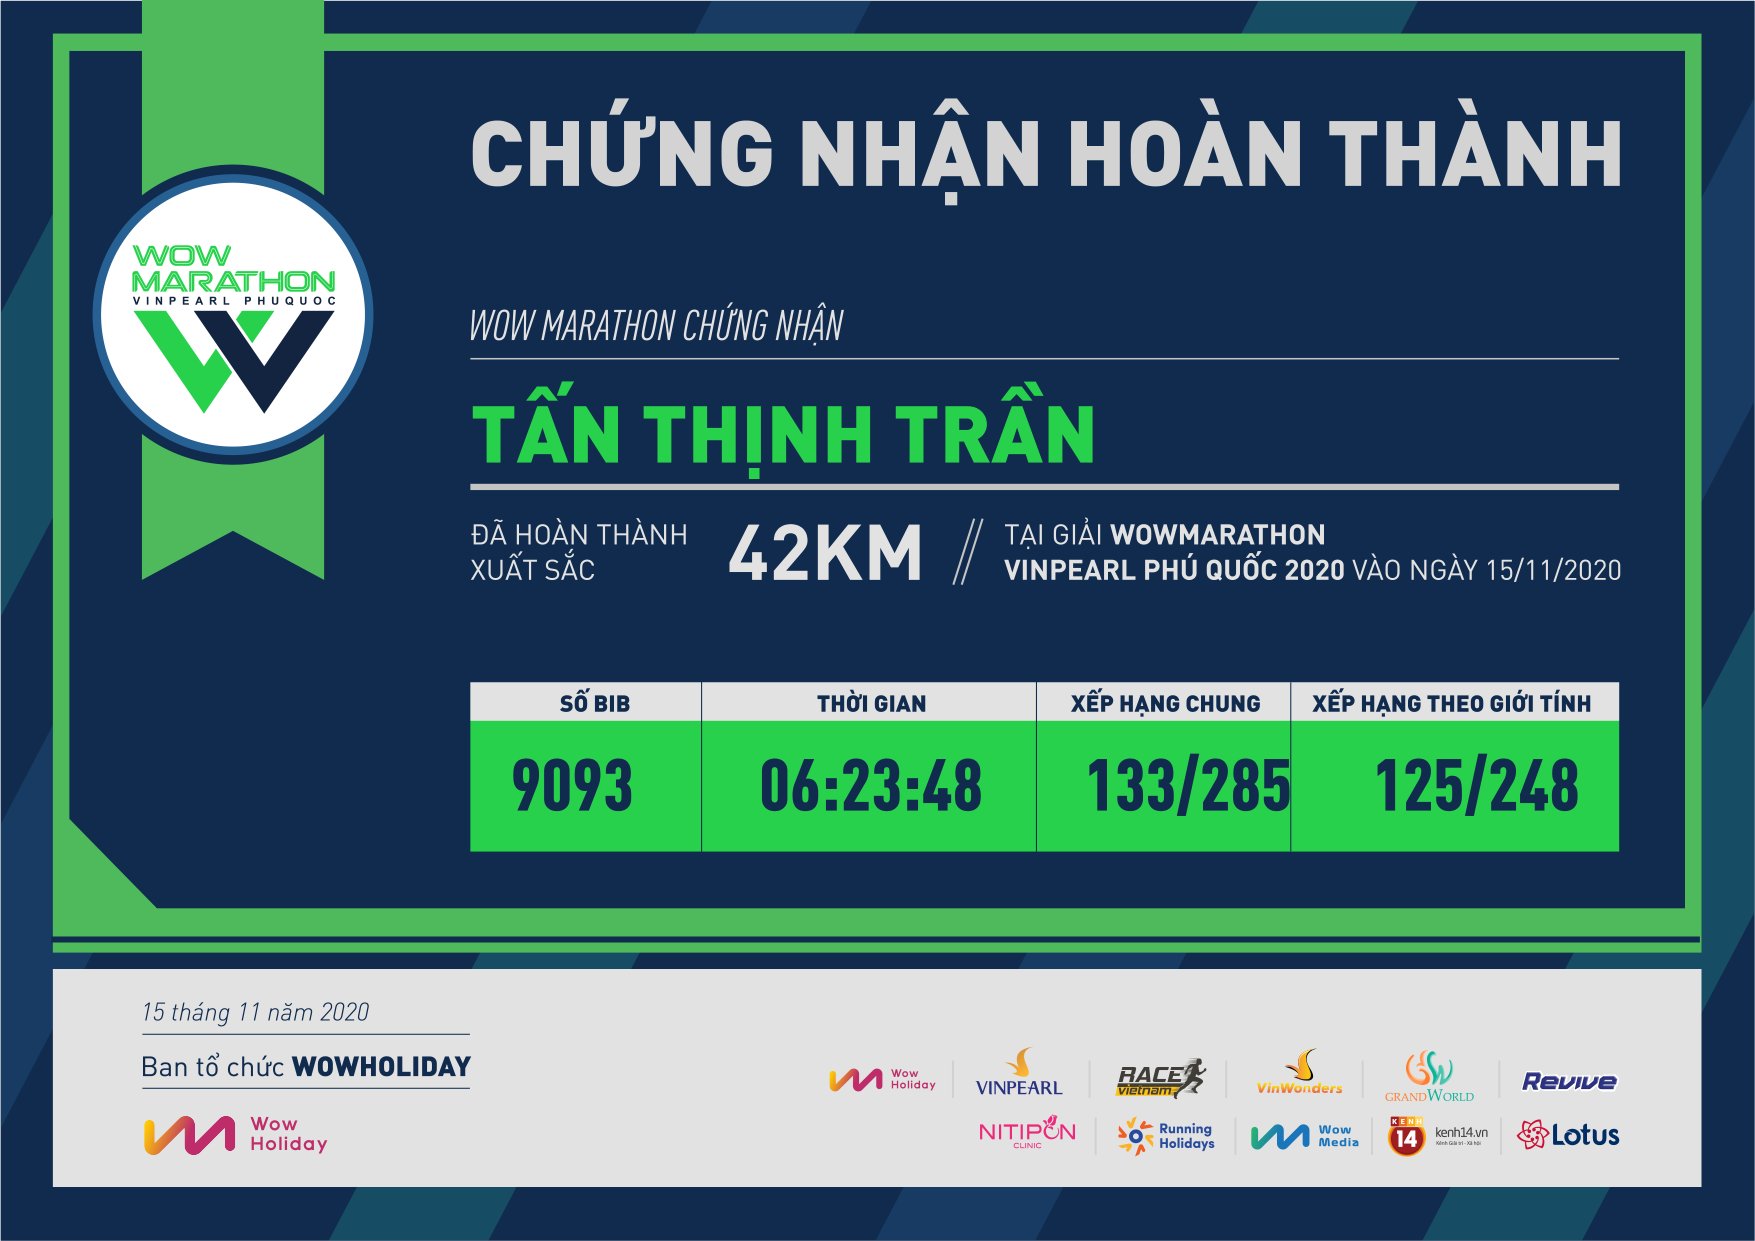 9093 - Tấn Thịnh Trần